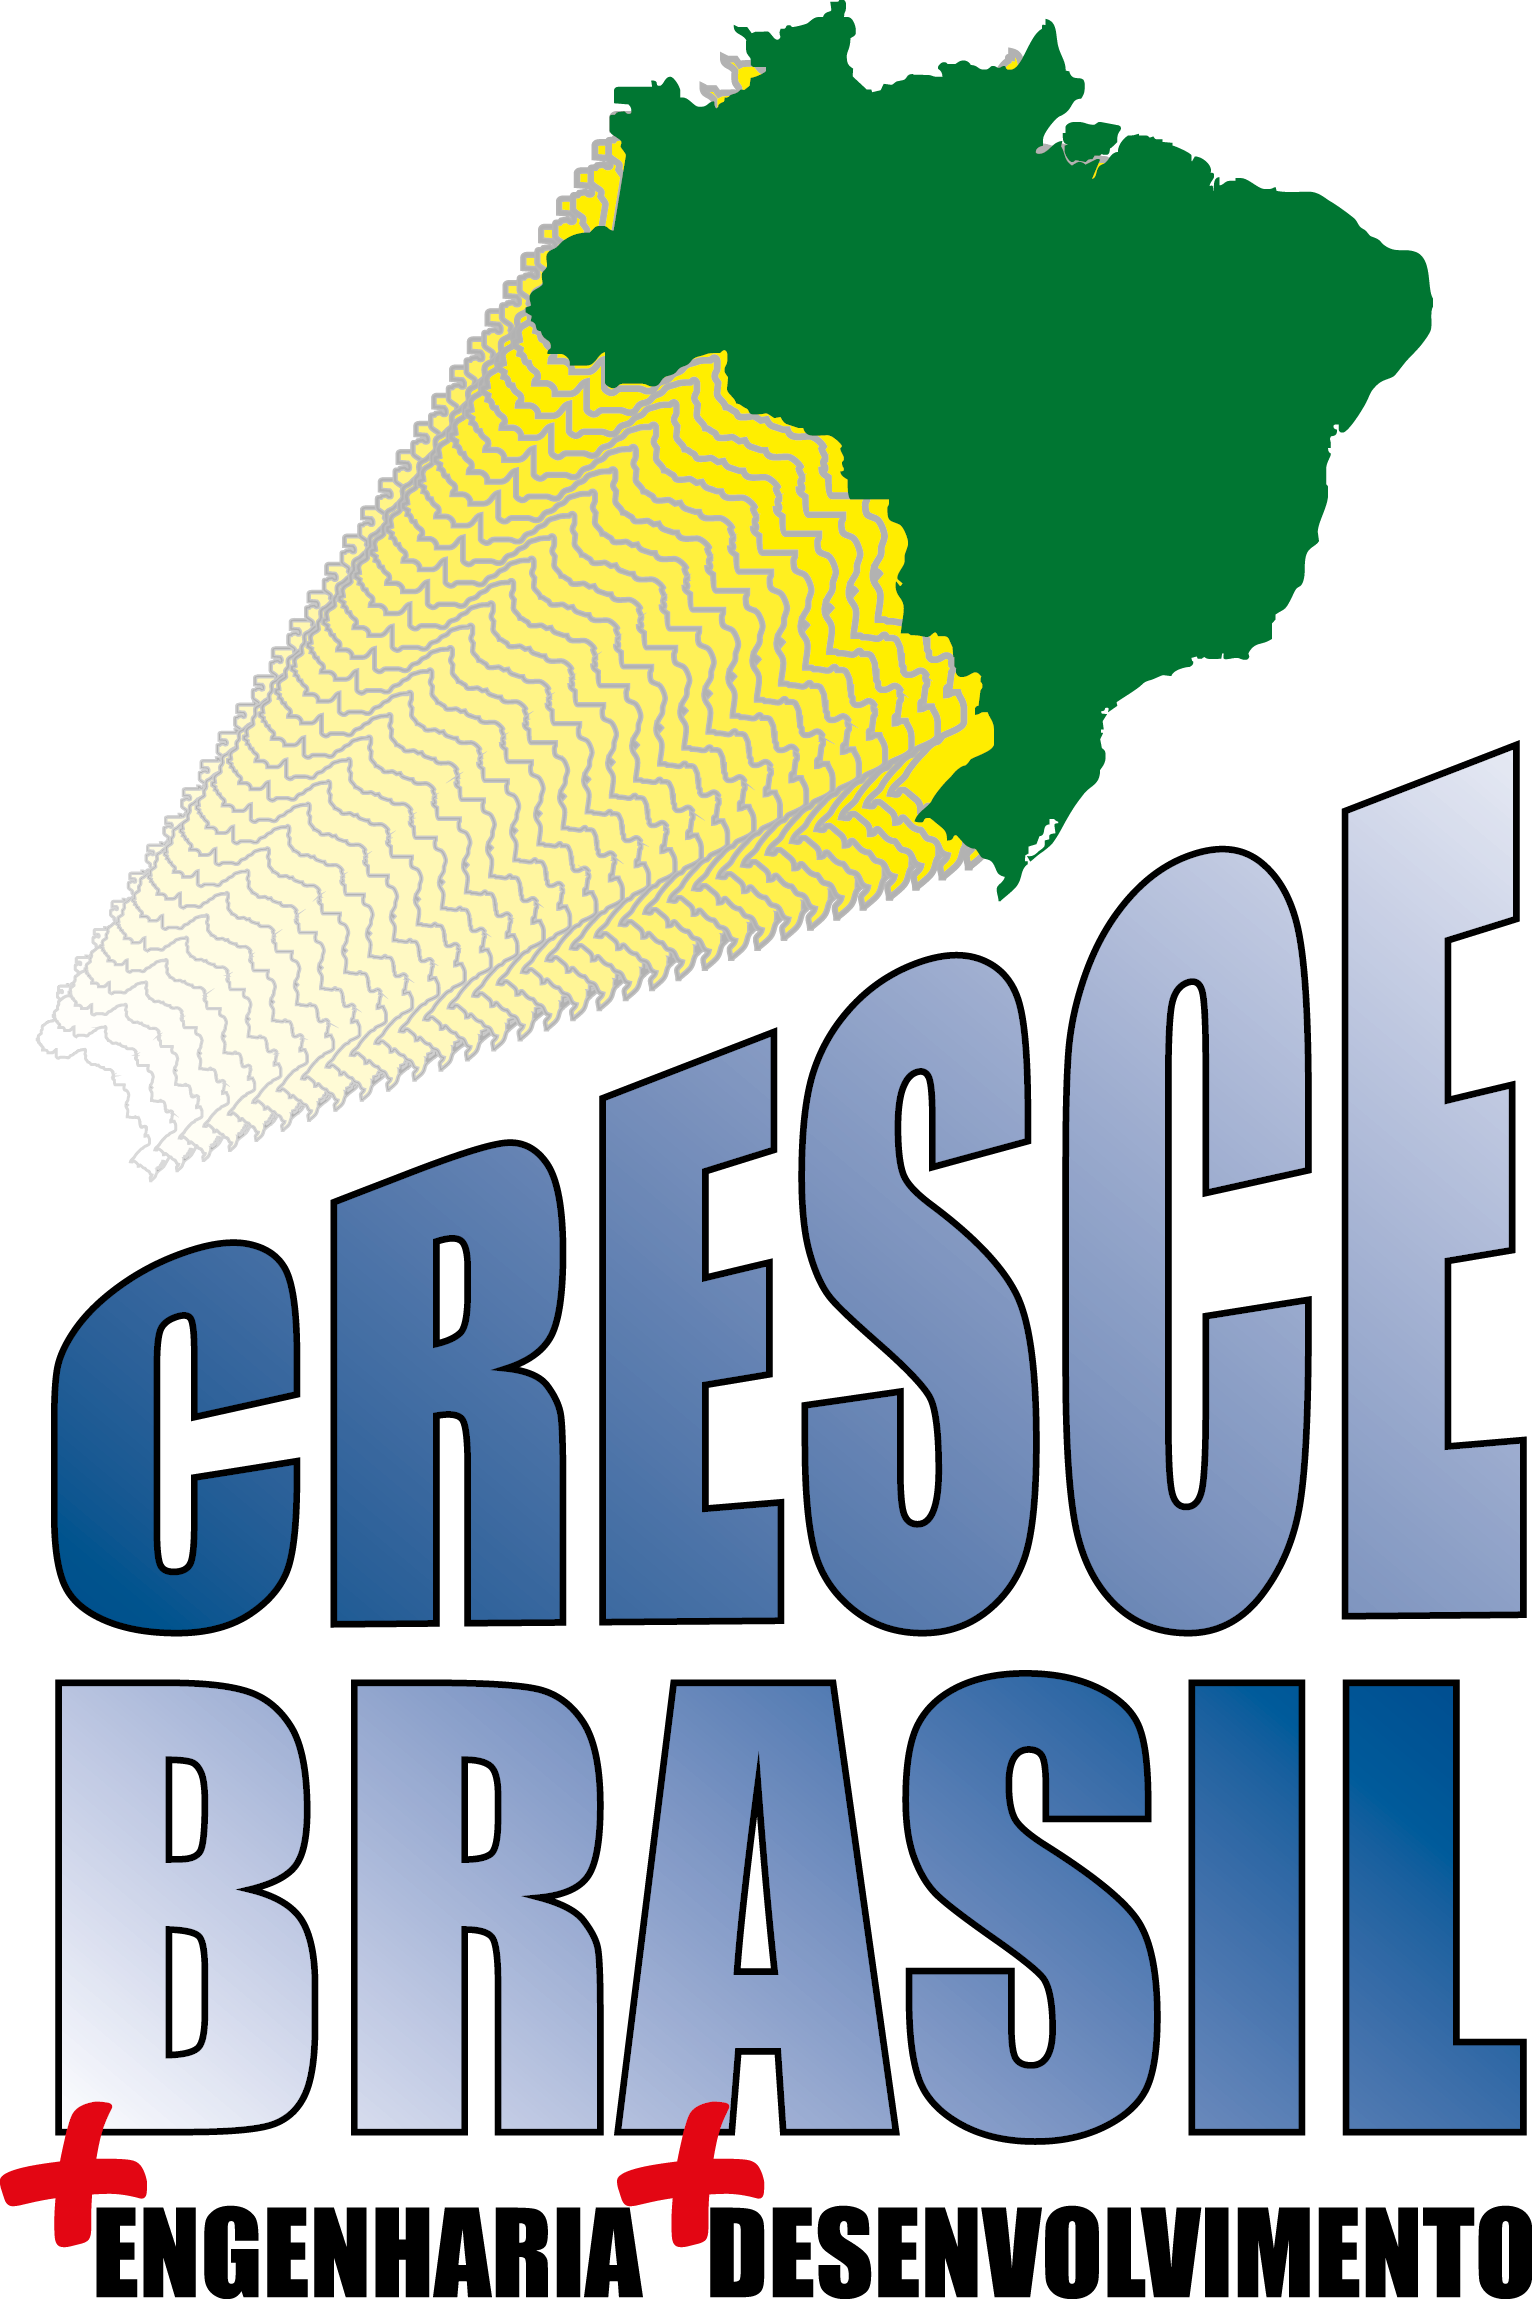 CresceBrasil logo